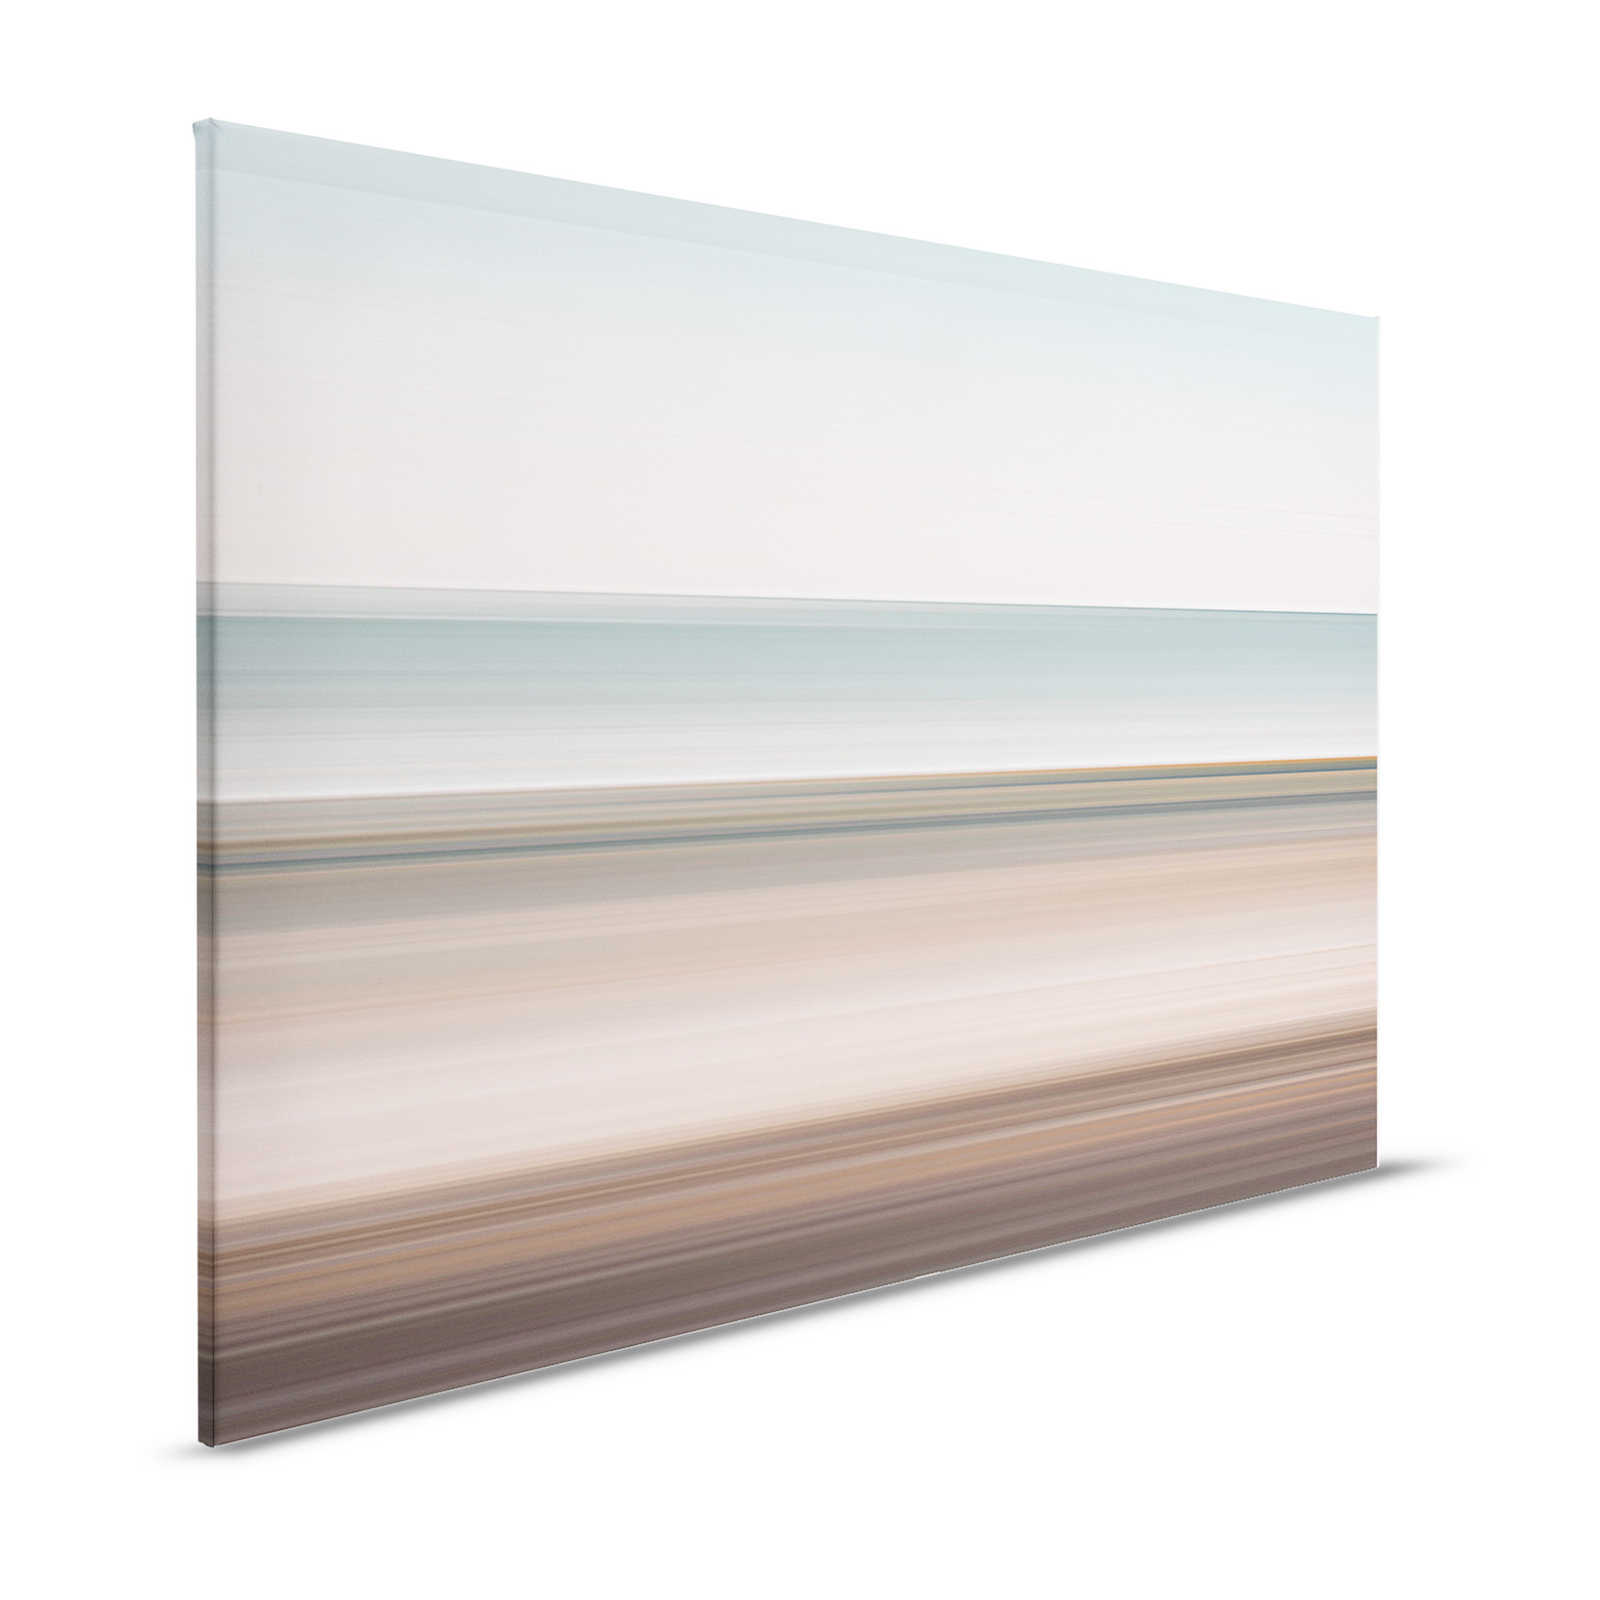 Horizon 2 - Leinwandbild abstrakte Landschaft mit Liniendesign – 1,20 m x 0,80 m
